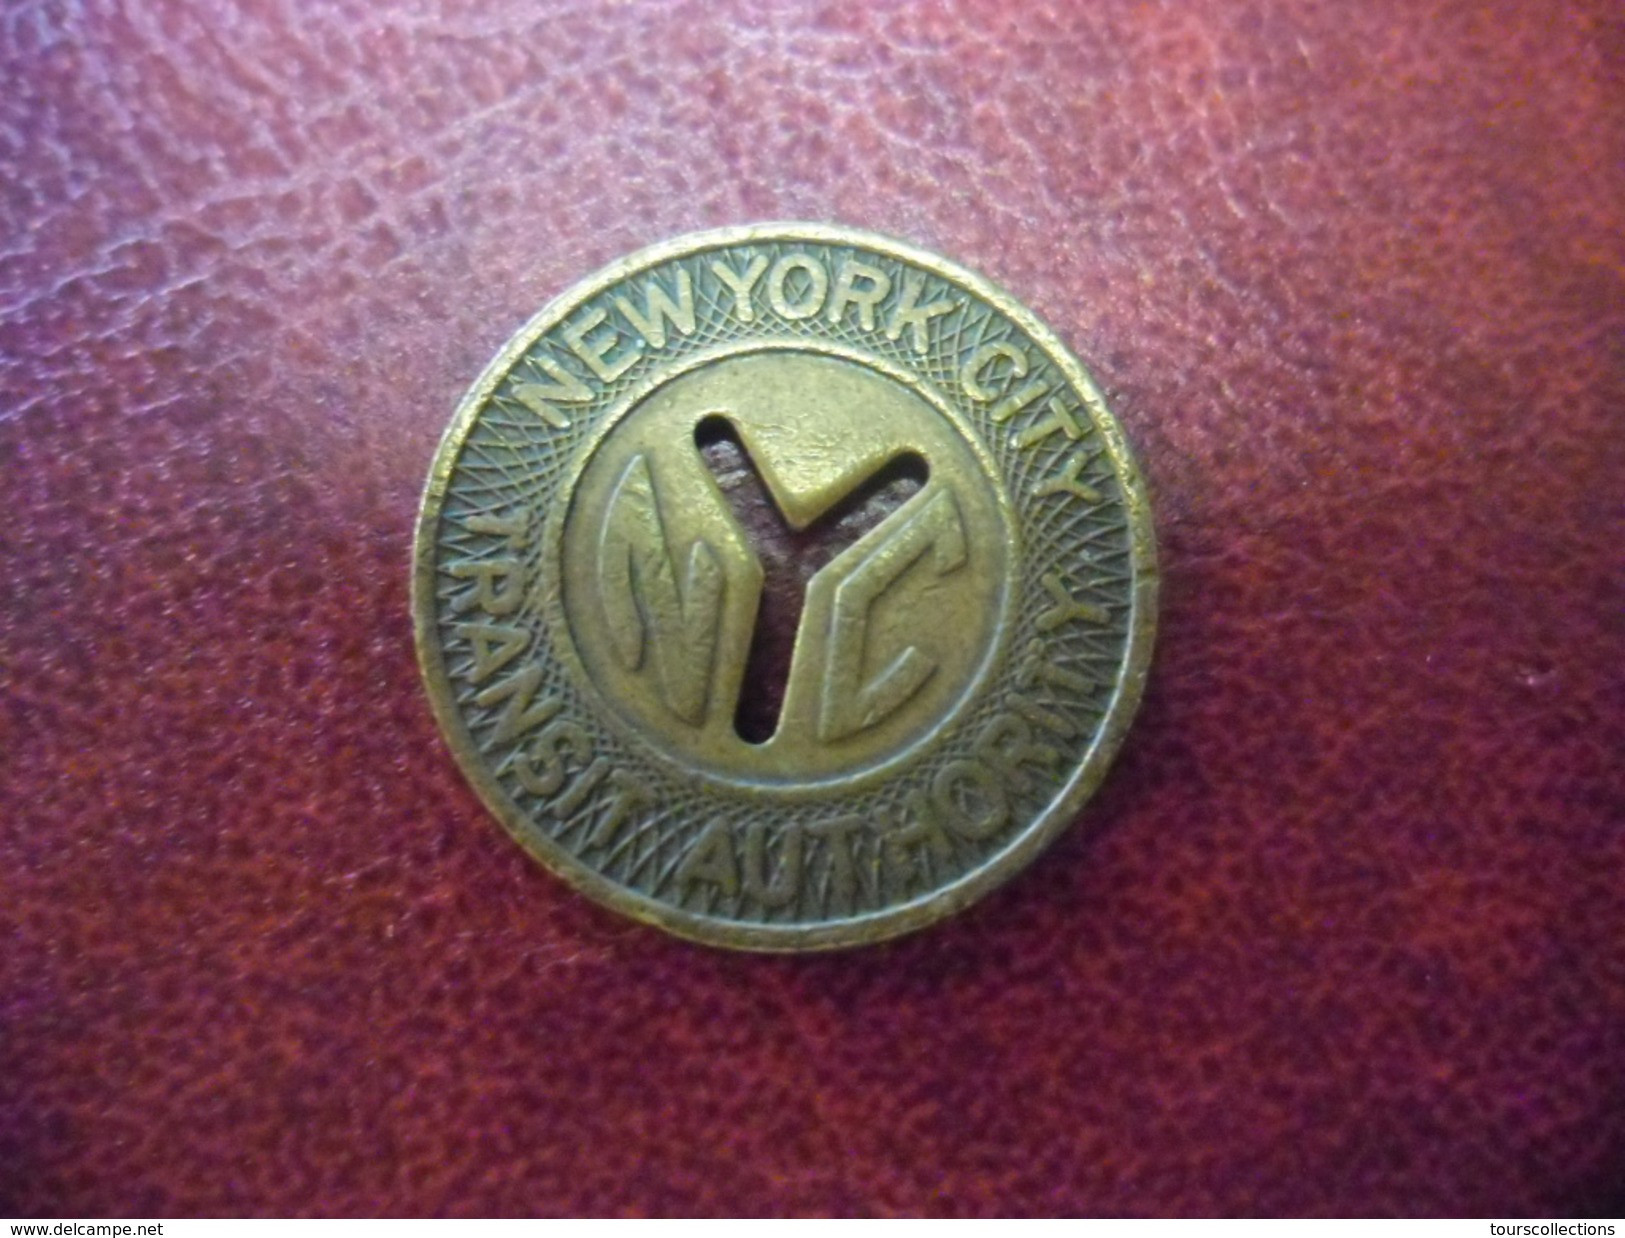 JETON New York City, New York Transit Authority One Fare Transit Token - Subway Métro Vers 1953 à 1970 - Monétaires/De Nécessité